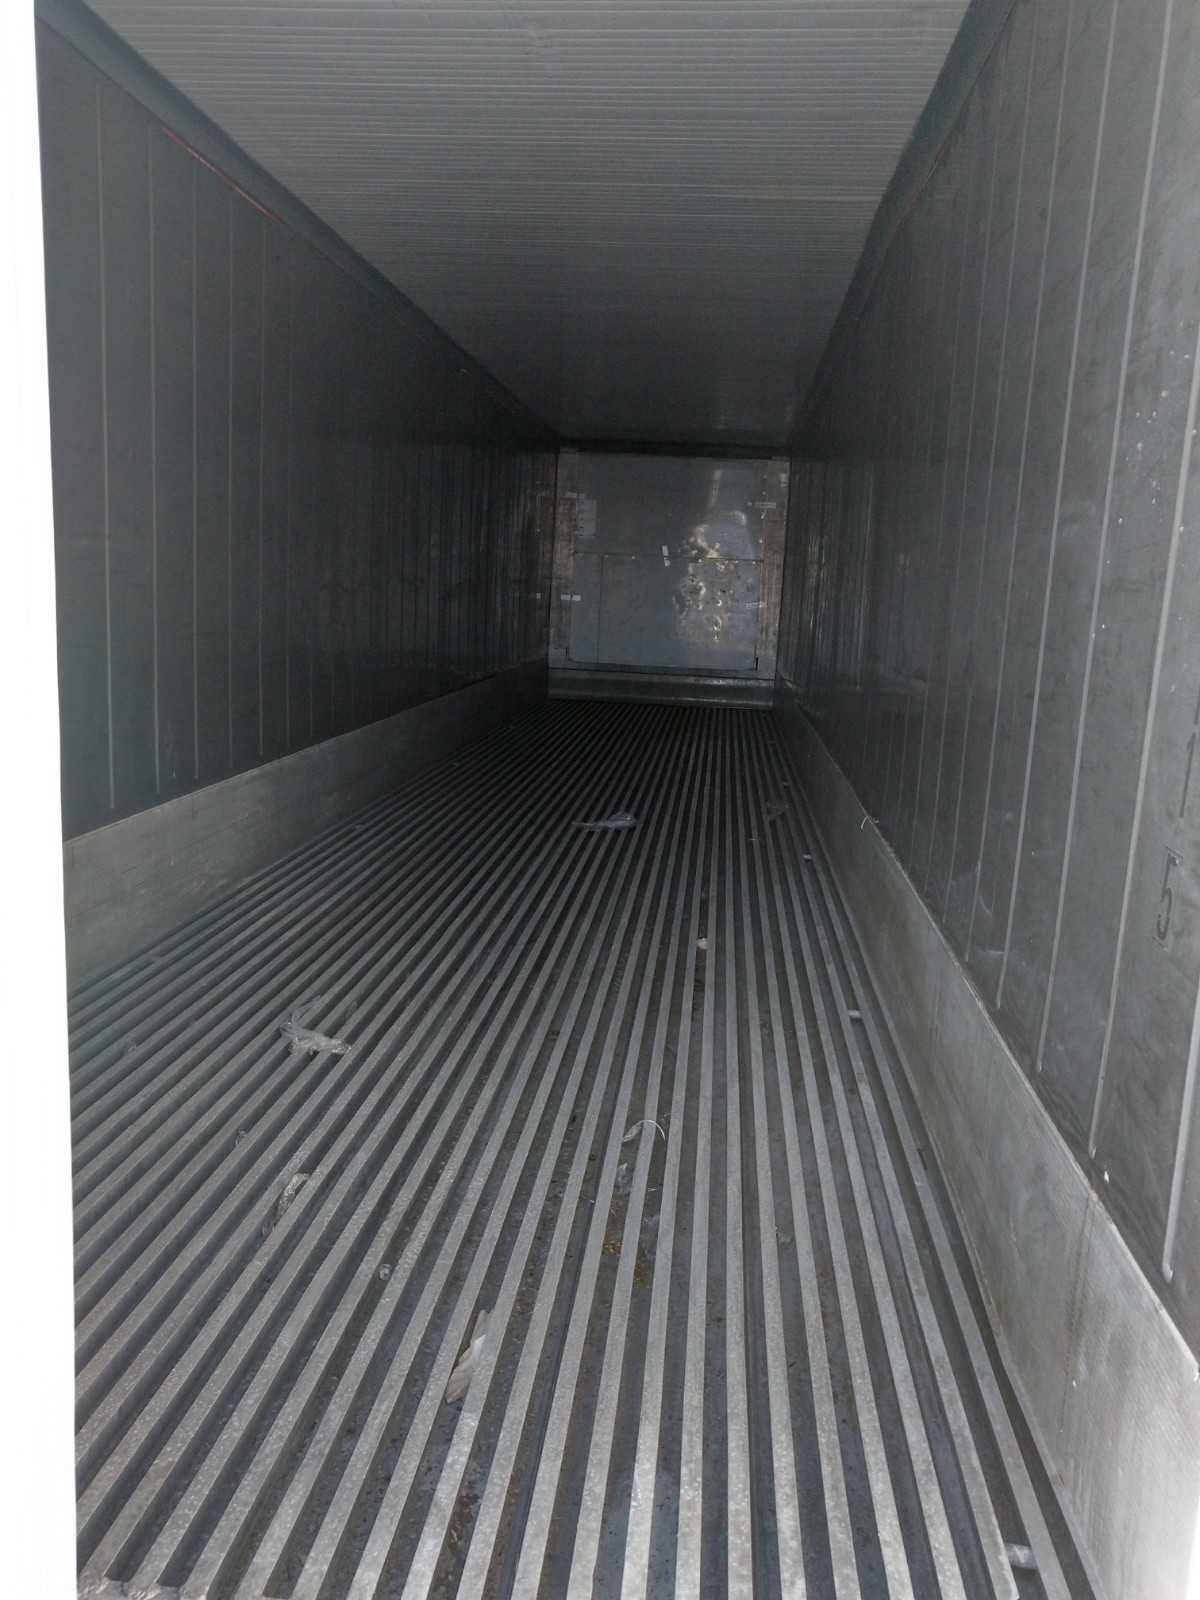 Chłodnia mroźnia kontener chłodniczy 40'HCRF używany sprawny gwarancja